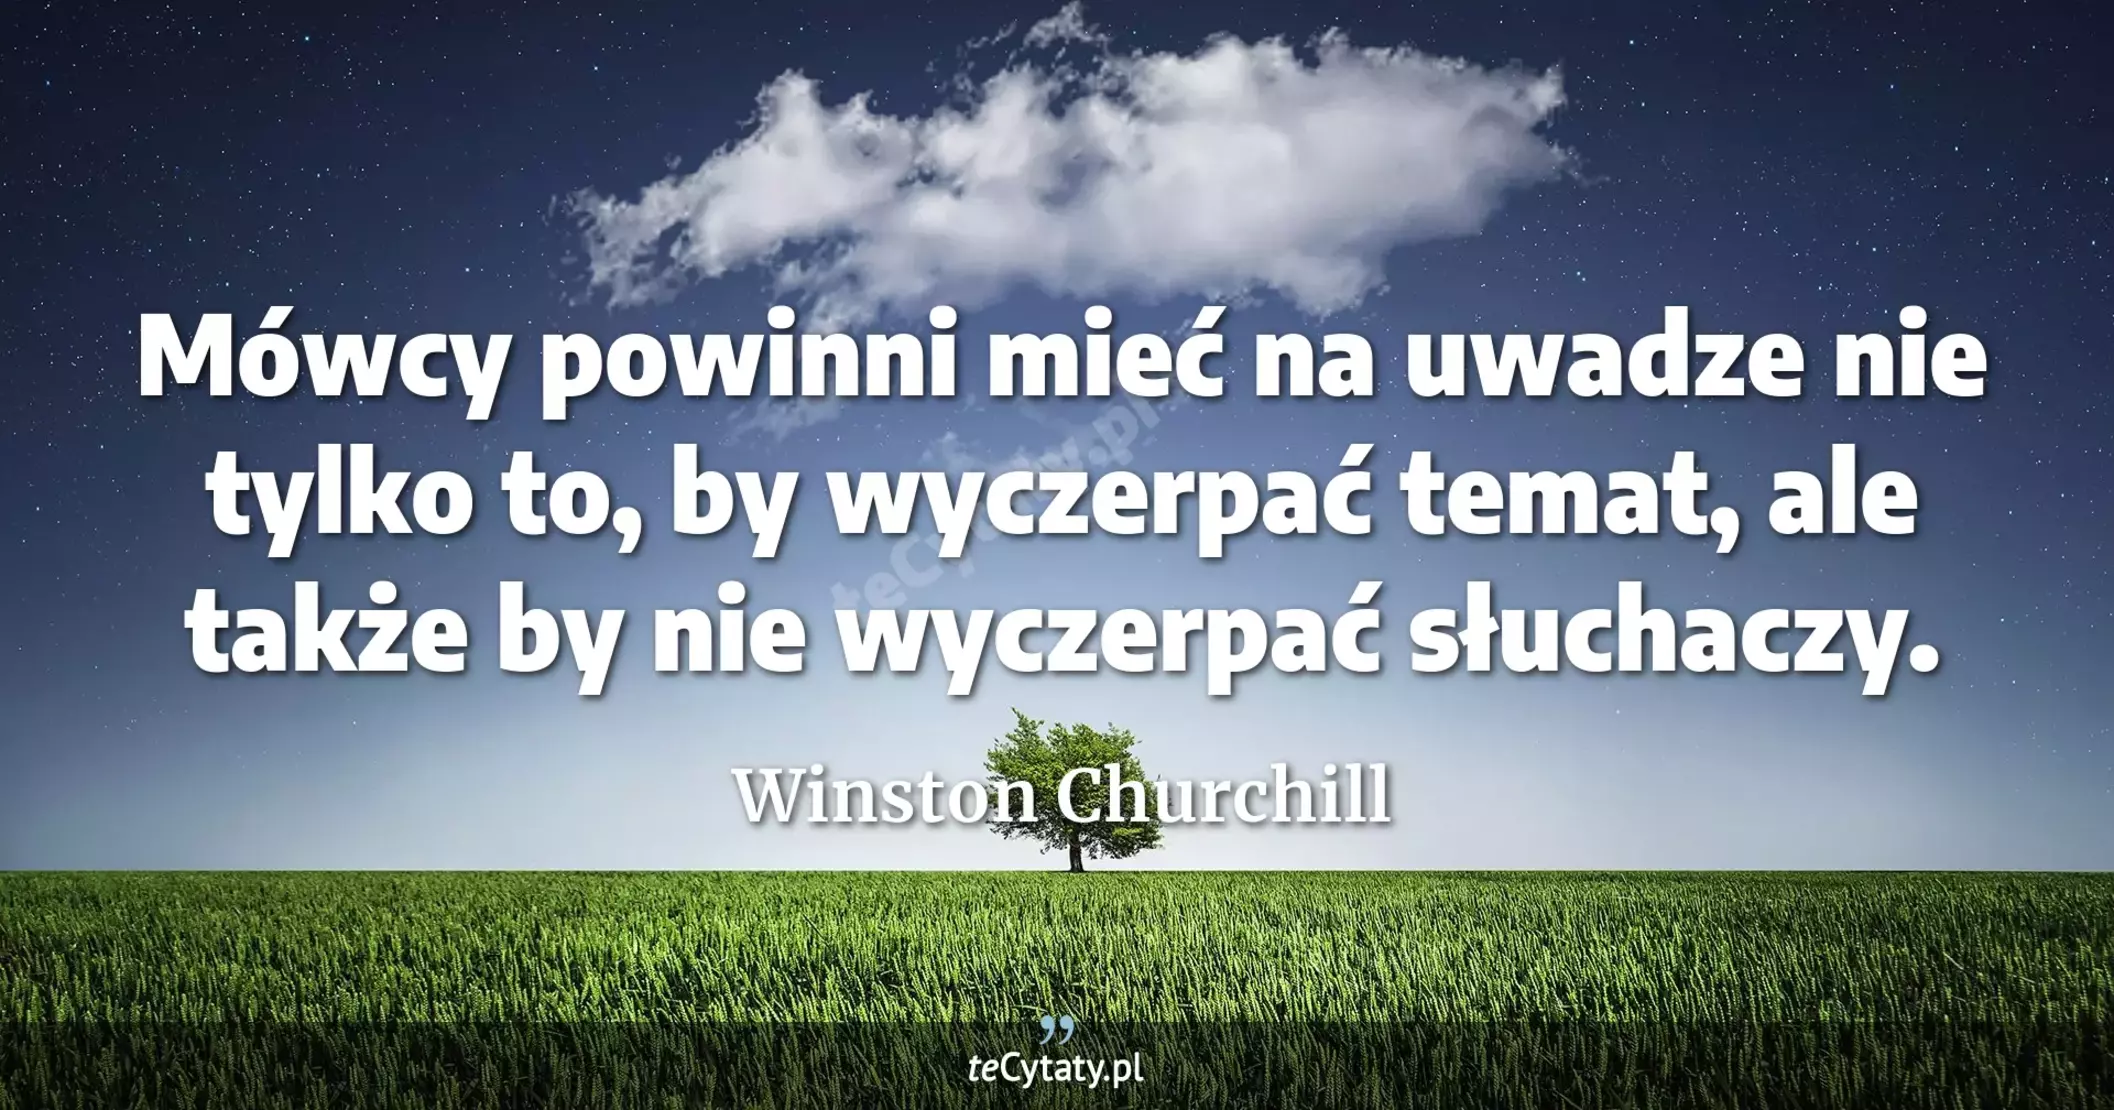 Mówcy powinni mieć na uwadze nie tylko to, by wyczerpać temat, ale także by nie wyczerpać słuchaczy. - Winston Churchill